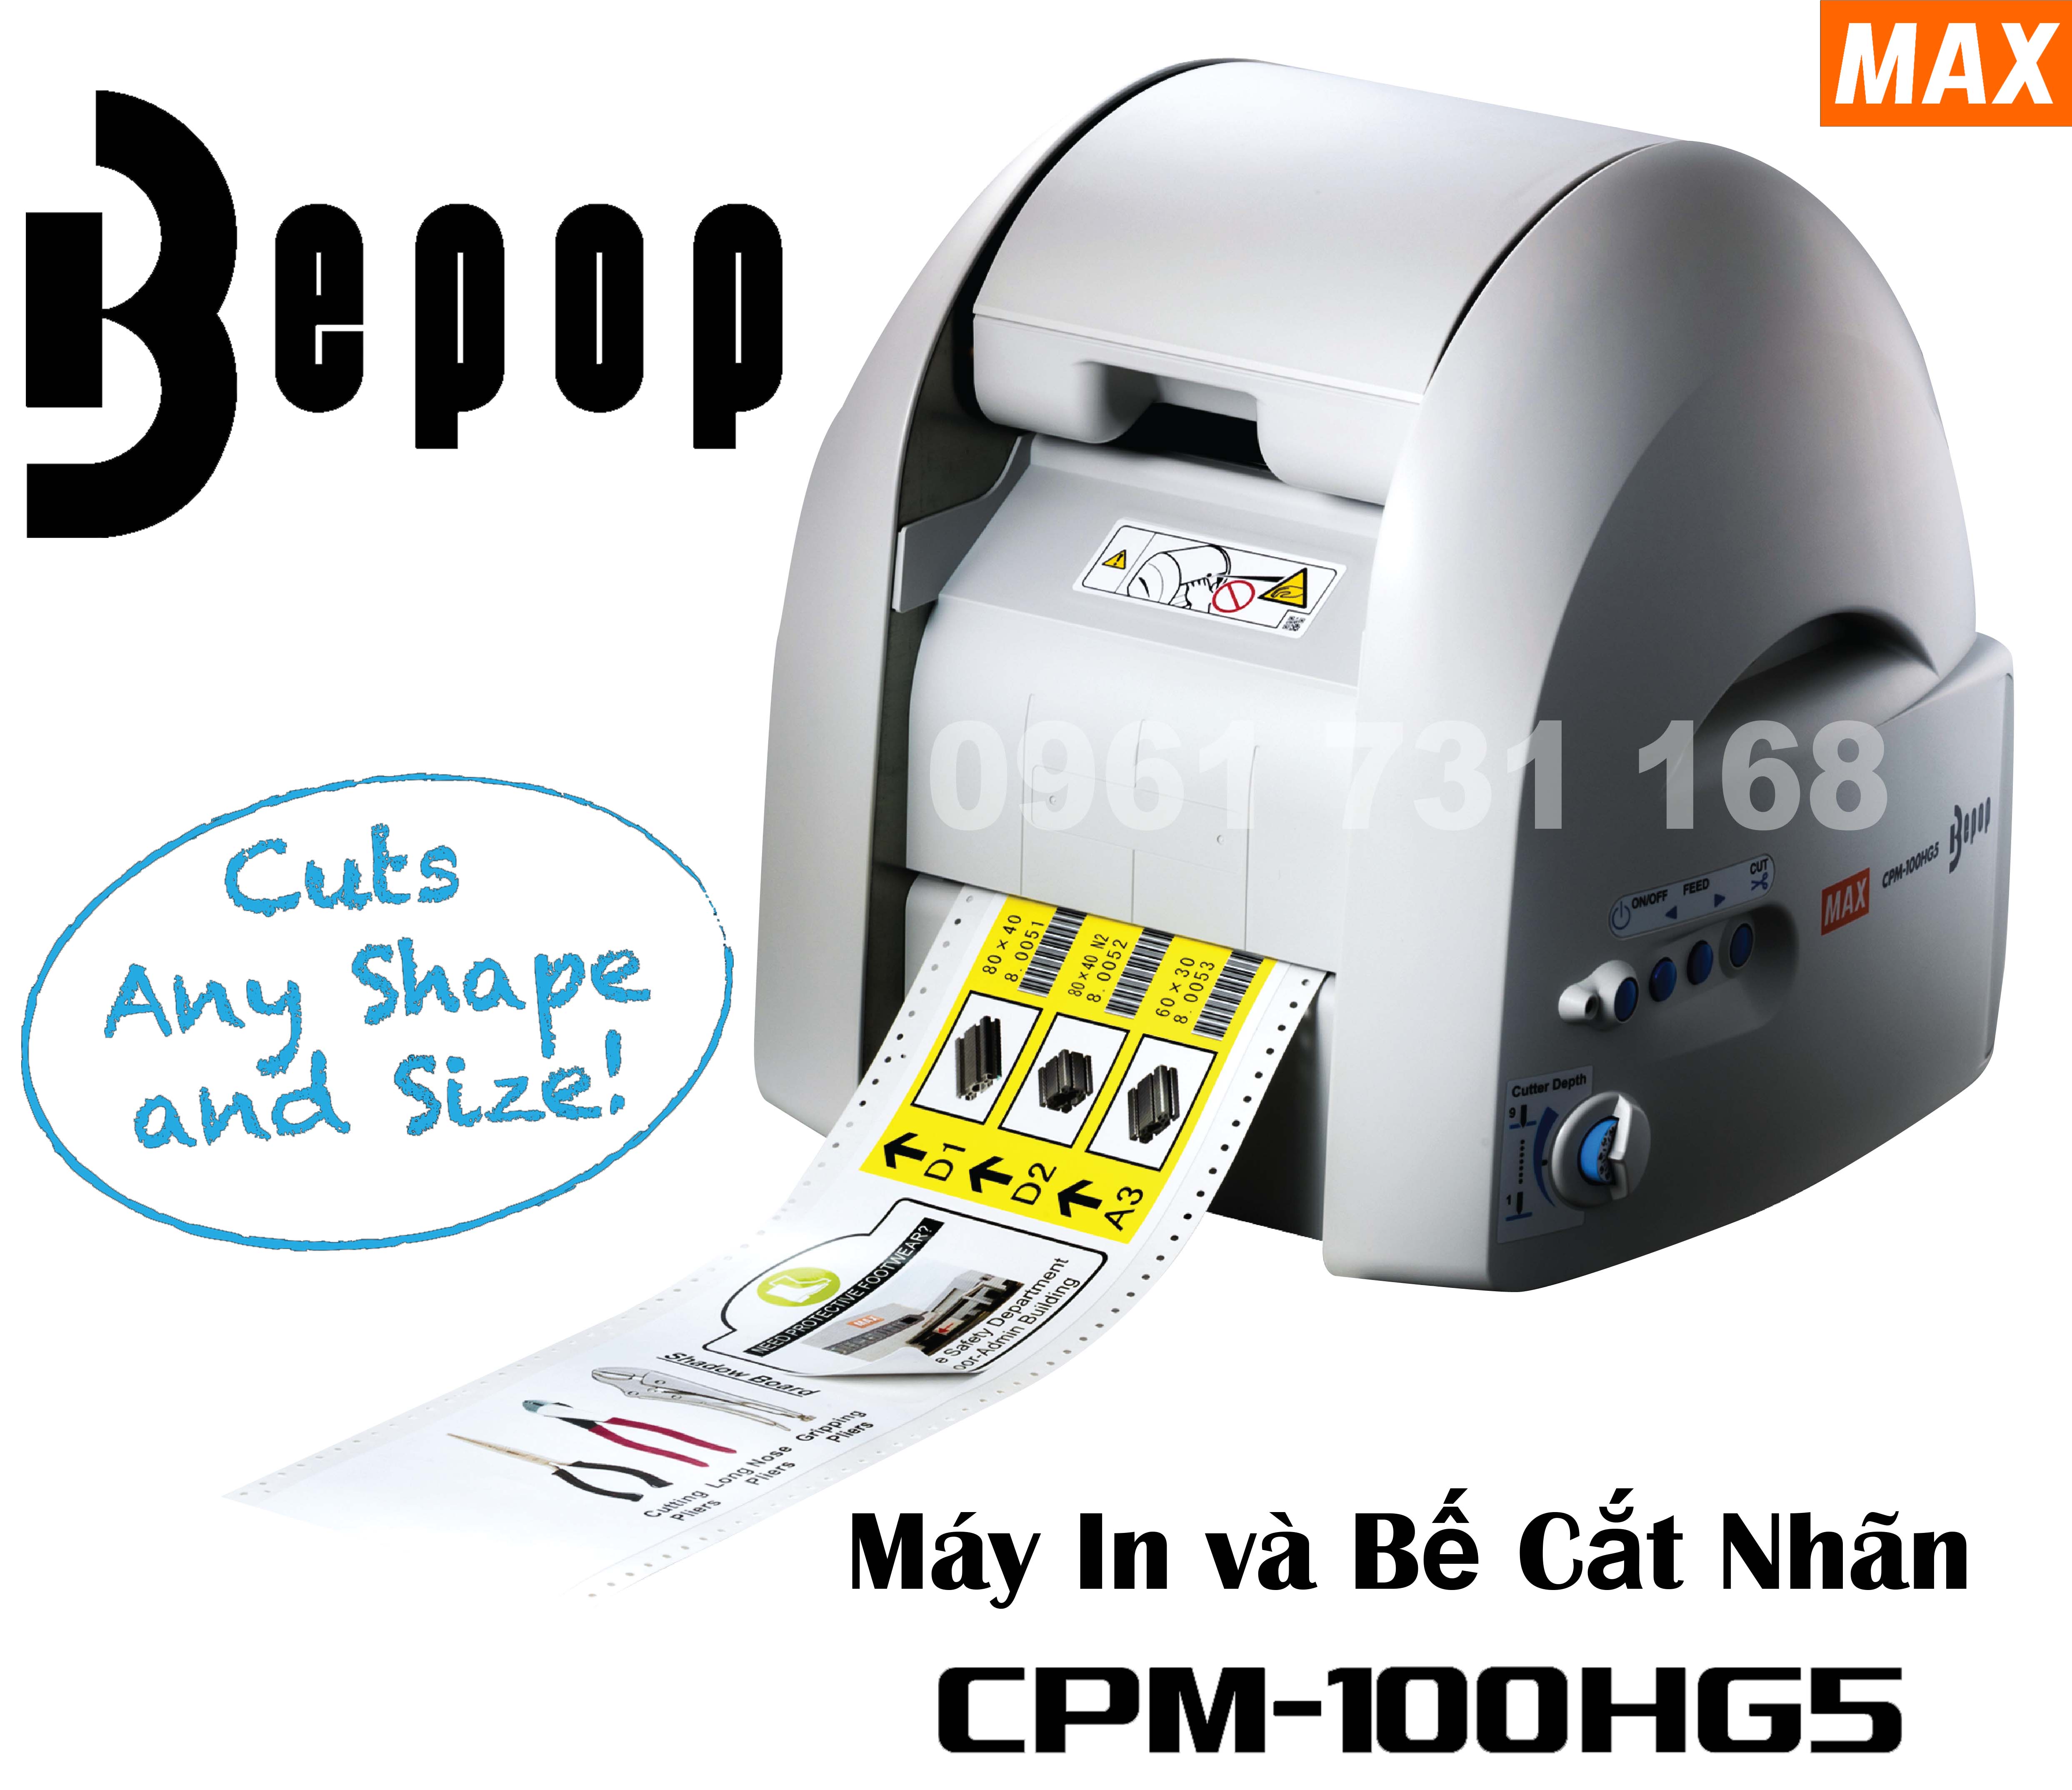 Máy in và bế cắt nhãn tự động CPM-100HG5M chính hãng MAX JAPAN